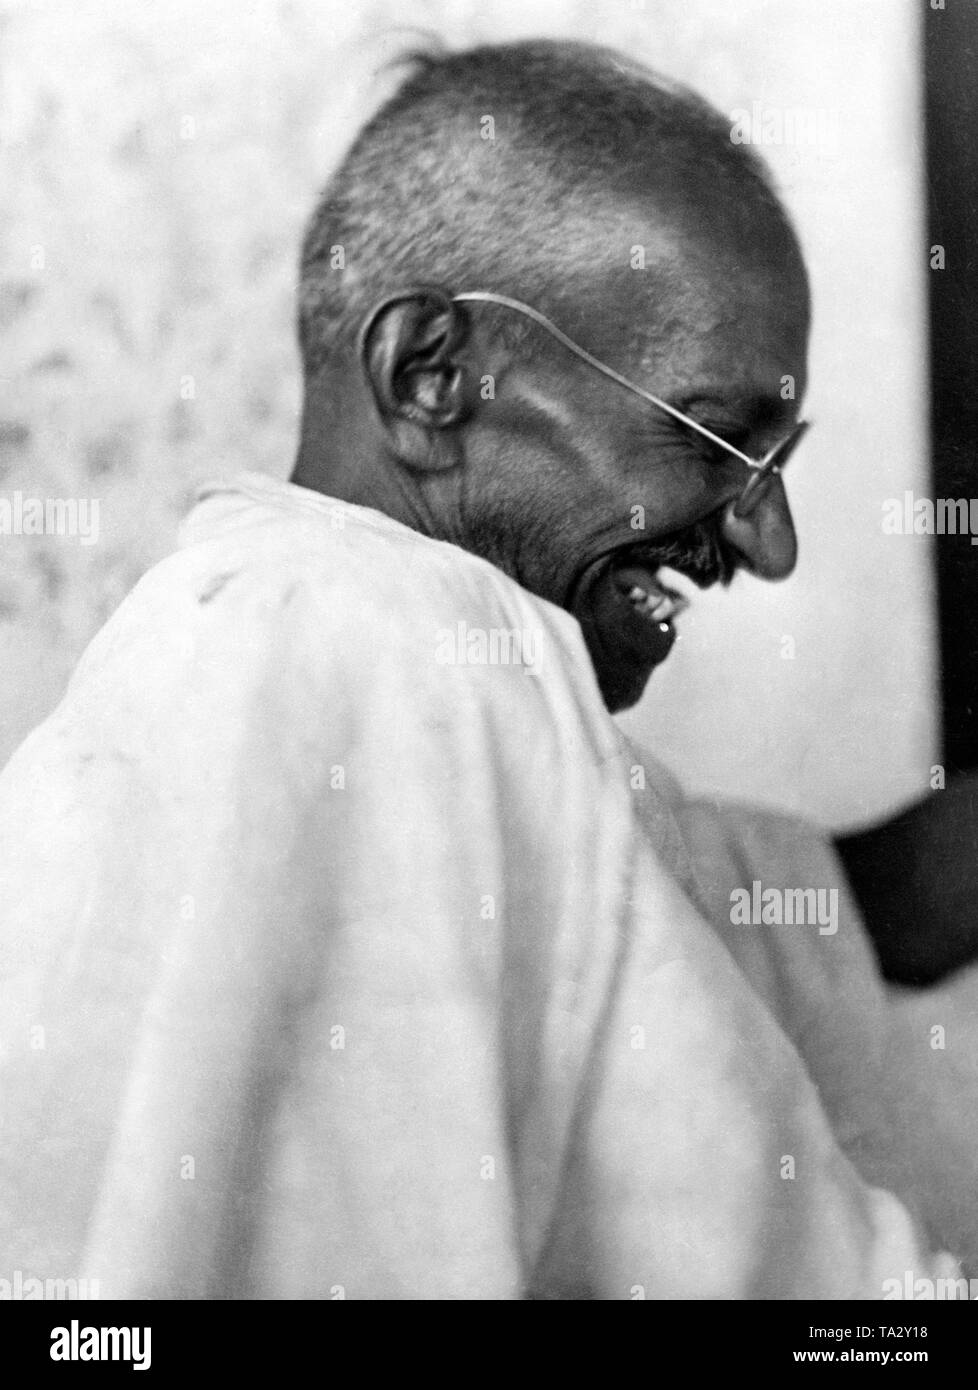 Mahatma Gandhi am Dandi camp in Navsari Bezirk, Gujarat. Gandhi führte ein Salt Marsh es das Salz Monopol der Britischen zu brechen. Alle Teilnehmer brachten ihre Salz es sich. Die Inhaftierung von einigen der Führer der Kongreß-Partei hatte einen großen Anteil am Erfolg der Kampagne. Diese Kampagne war der erste Schritt zur Unabhängigkeit Indiens. Gandhi wurde mehrmals für den Friedensnobelpreis nominiert während seiner Lebenszeit. Stockfoto